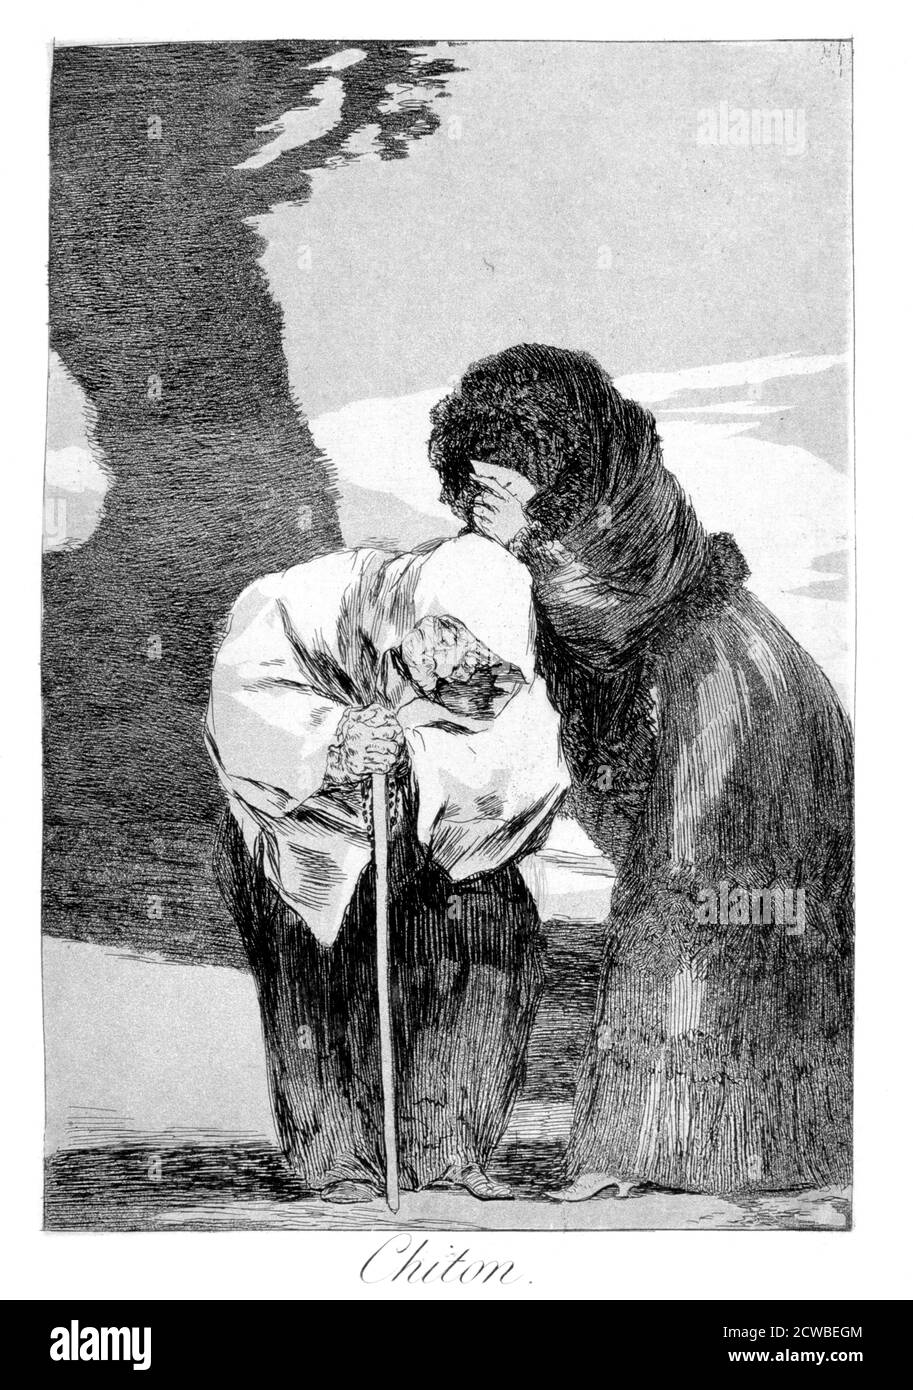 Hush', 1799 Künstler: Francisco Goya. Platte 28 von 'Los Caprichos'. Los Caprichos sind ein Satz von 80 Drucken in Aquatinta und Radierung, die der spanische Künstler Francisco Goya 1797 und 1798 schuf und 1799 als Album veröffentlicht wurde. Stockfoto